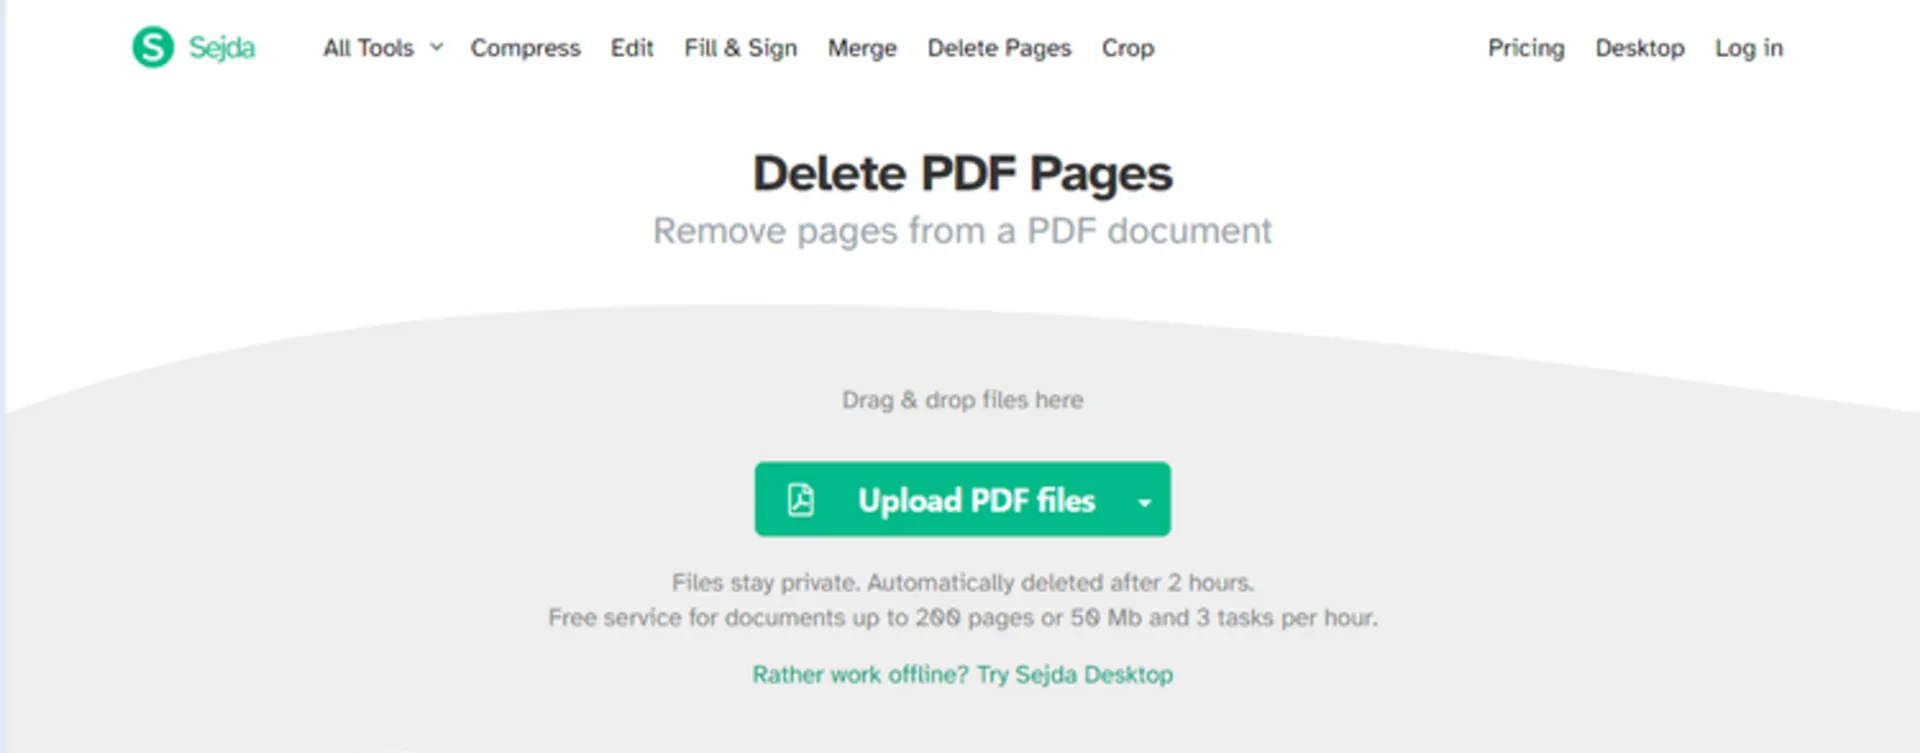 حذف صفحات PDF به صورت آنلاین